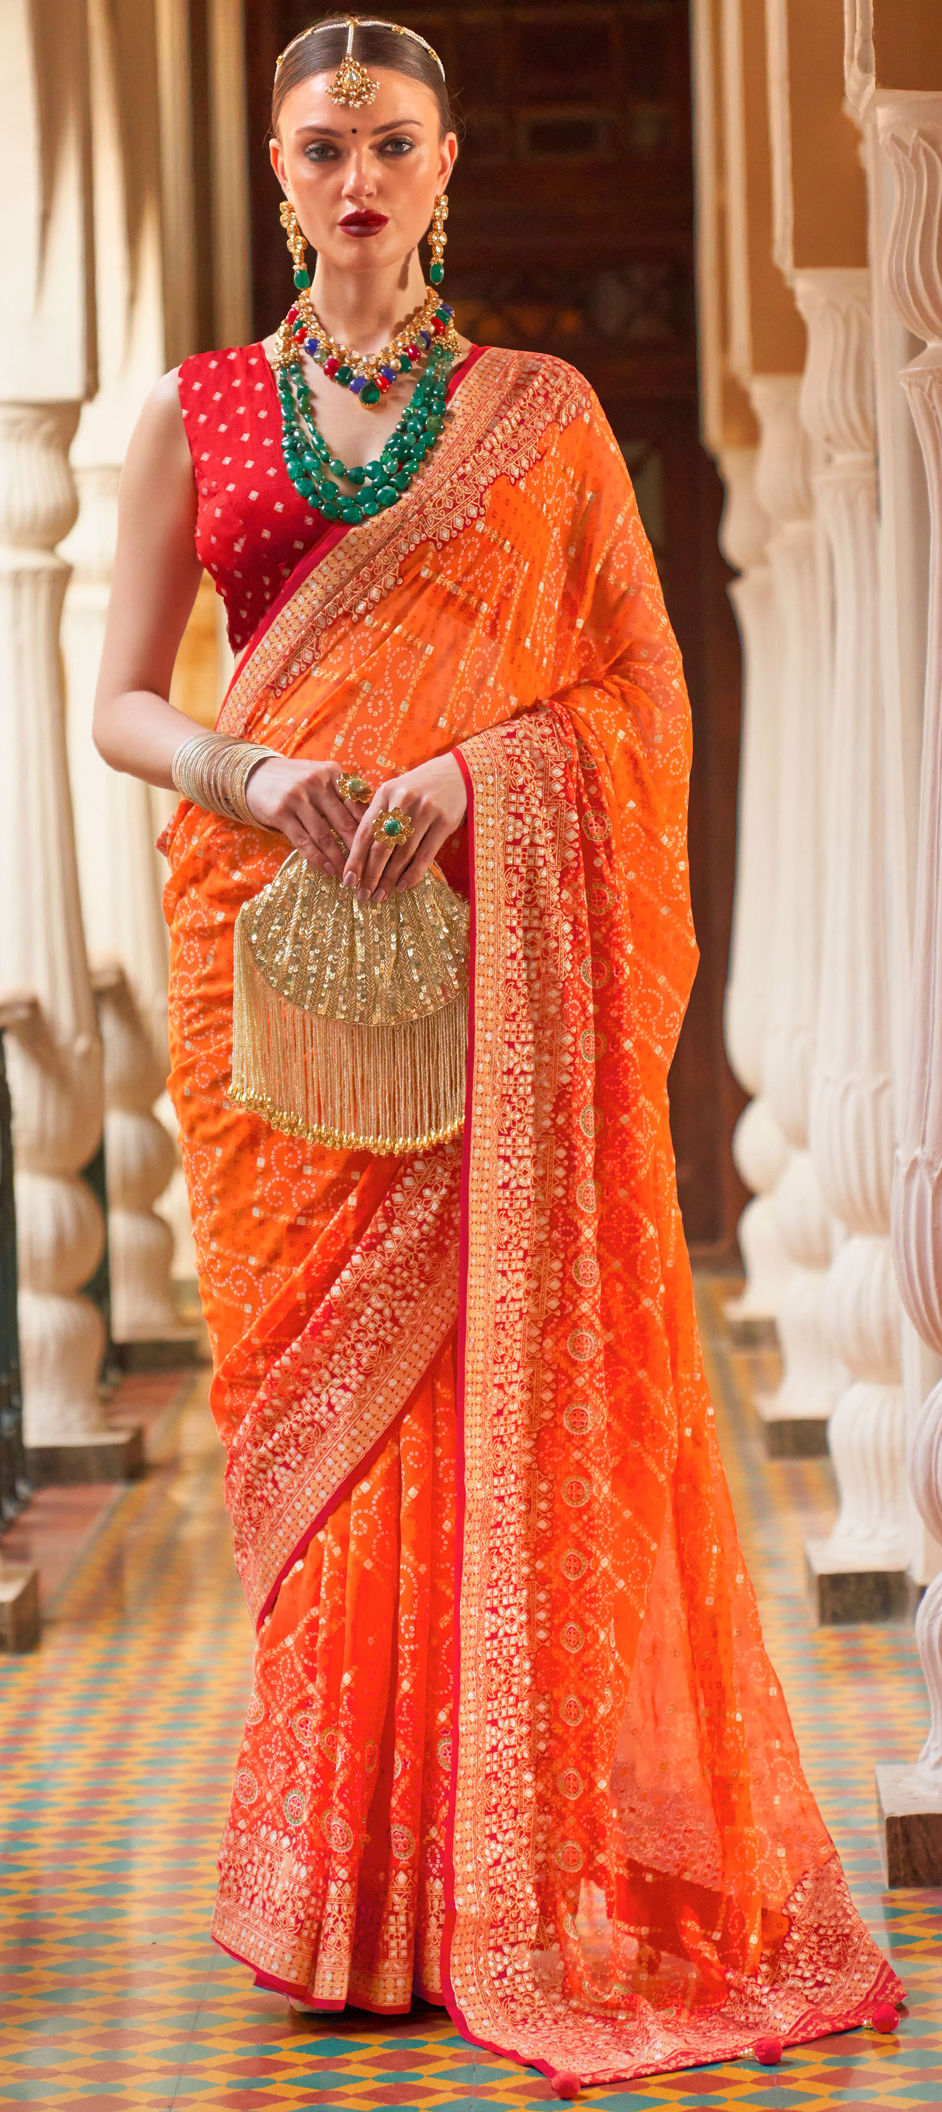 Saree Idea | Indian beauty saree, Bridal sarees south indian, South indian  bride saree